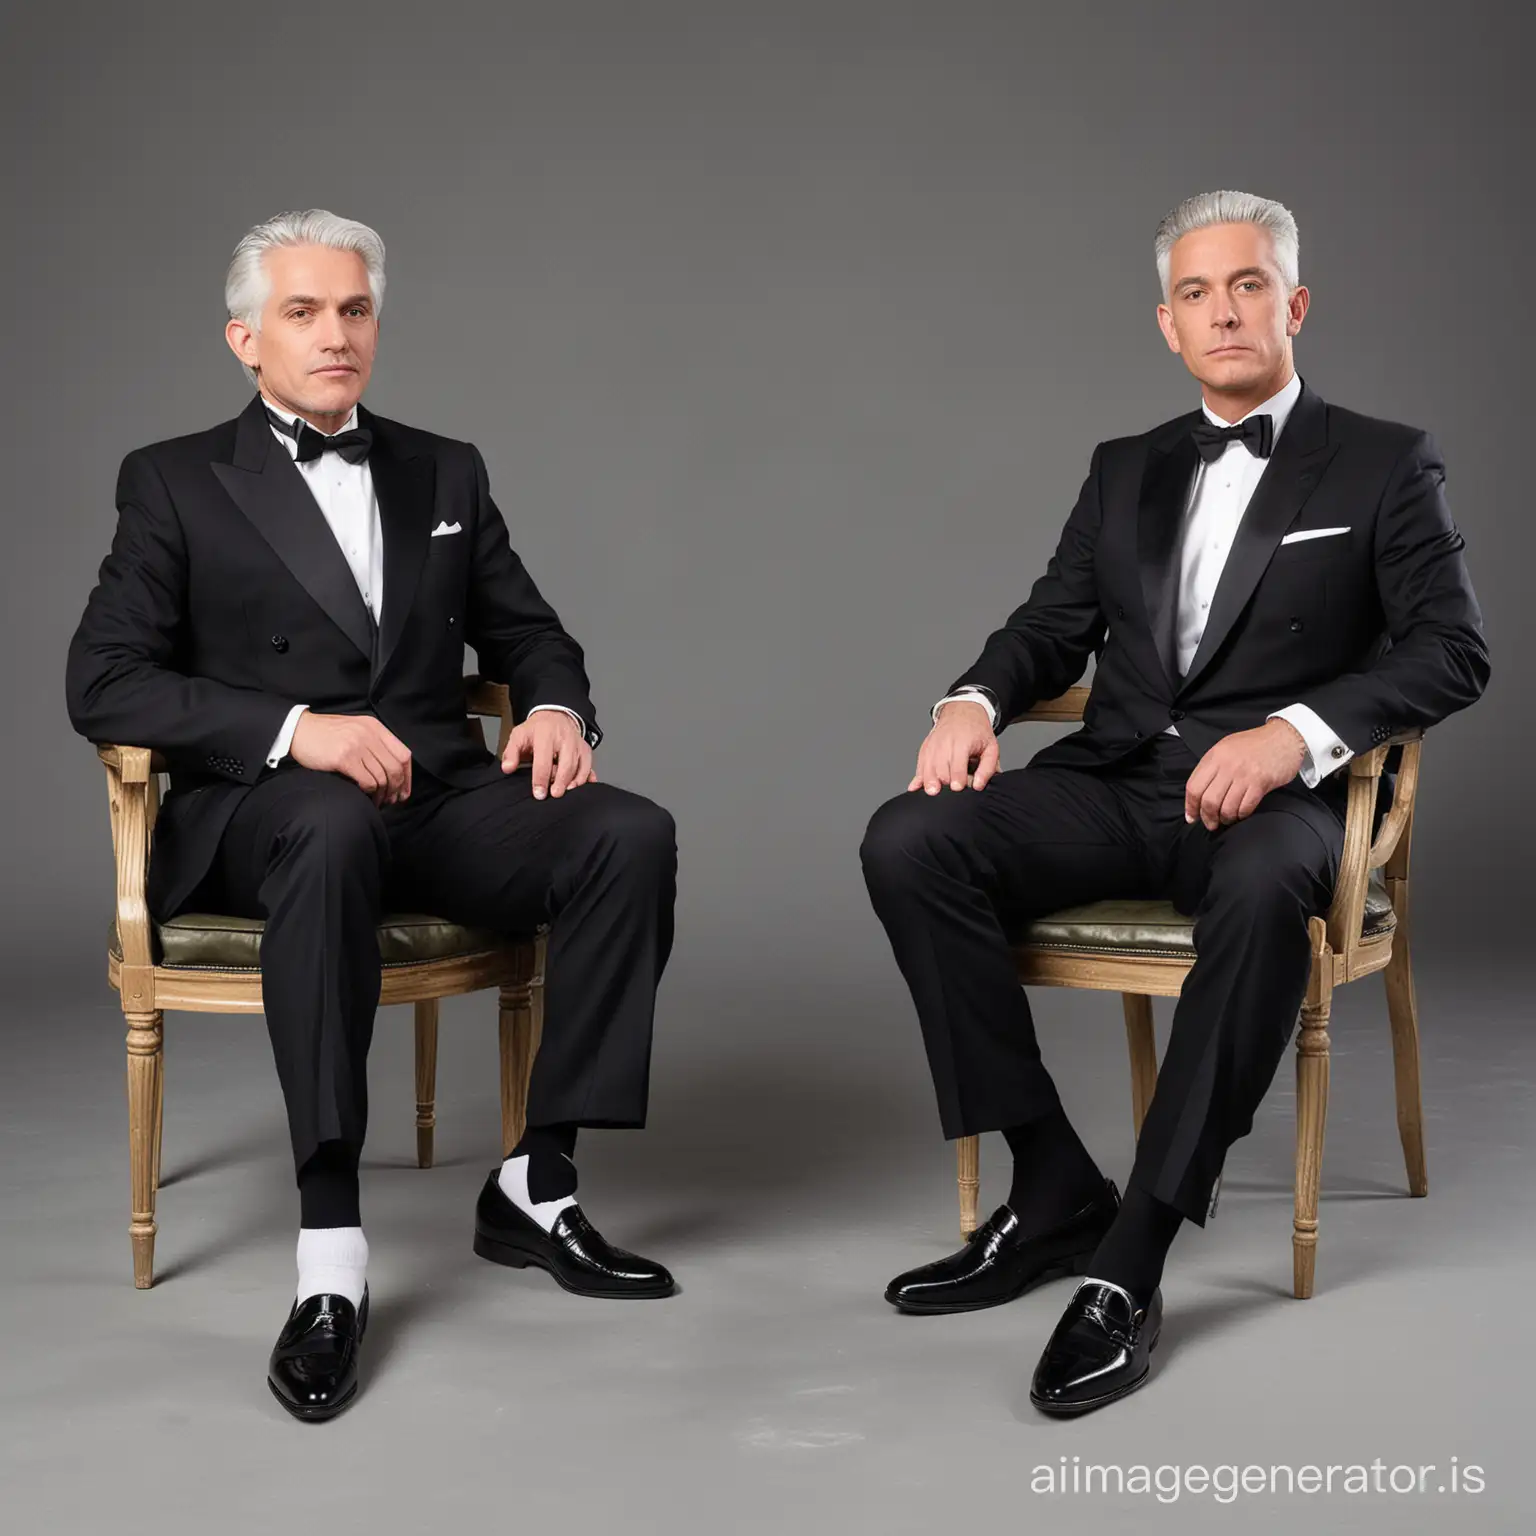 Elderly-Businessmen-in-Formal-Attire-Sitting-on-Chairs